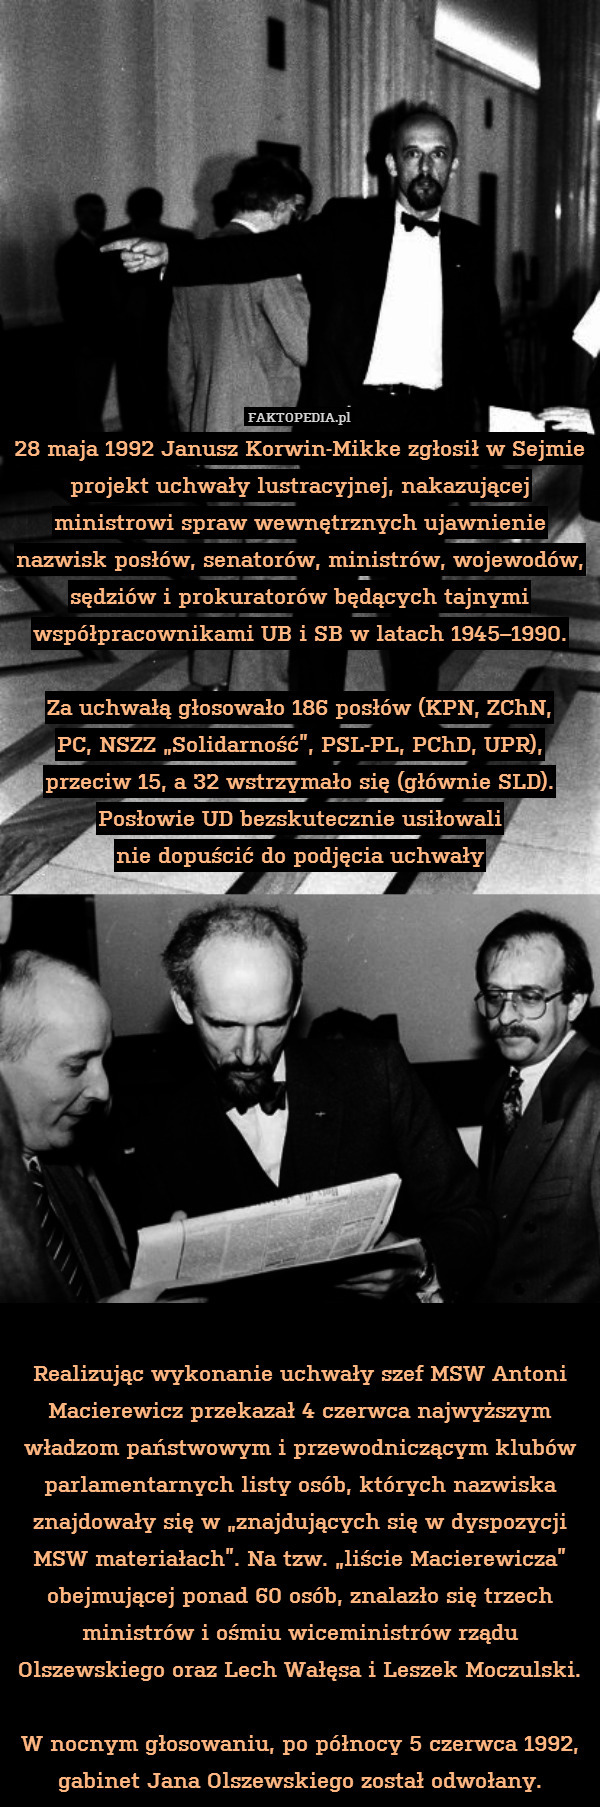 28 maja 1992 Janusz Korwin-Mikke zgłosił w Sejmie projekt uchwały lustracyjnej, nakazującej ministrowi spraw wewnętrznych ujawnienie nazwisk posłów, senatorów, ministrów, wojewodów, sędziów i prokuratorów będących tajnymi współpracownikami UB i SB w latach 1945–1990.

Za uchwałą głosowało 186 posłów (KPN, ZChN,
PC, NSZZ „Solidarność”, PSL-PL, PChD, UPR), przeciw 15, a 32 wstrzymało się (głównie SLD). Posłowie UD bezskutecznie usiłowali
nie dopuścić do podjęcia uchwały













Realizując wykonanie uchwały szef MSW Antoni Macierewicz przekazał 4 czerwca najwyższym władzom państwowym i przewodniczącym klubów parlamentarnych listy osób, których nazwiska znajdowały się w „znajdujących się w dyspozycji MSW materiałach”. Na tzw. „liście Macierewicza” obejmującej ponad 60 osób, znalazło się trzech ministrów i ośmiu wiceministrów rządu Olszewskiego oraz Lech Wałęsa i Leszek Moczulski.

W nocnym głosowaniu, po północy 5 czerwca 1992, gabinet Jana Olszewskiego został odwołany. 